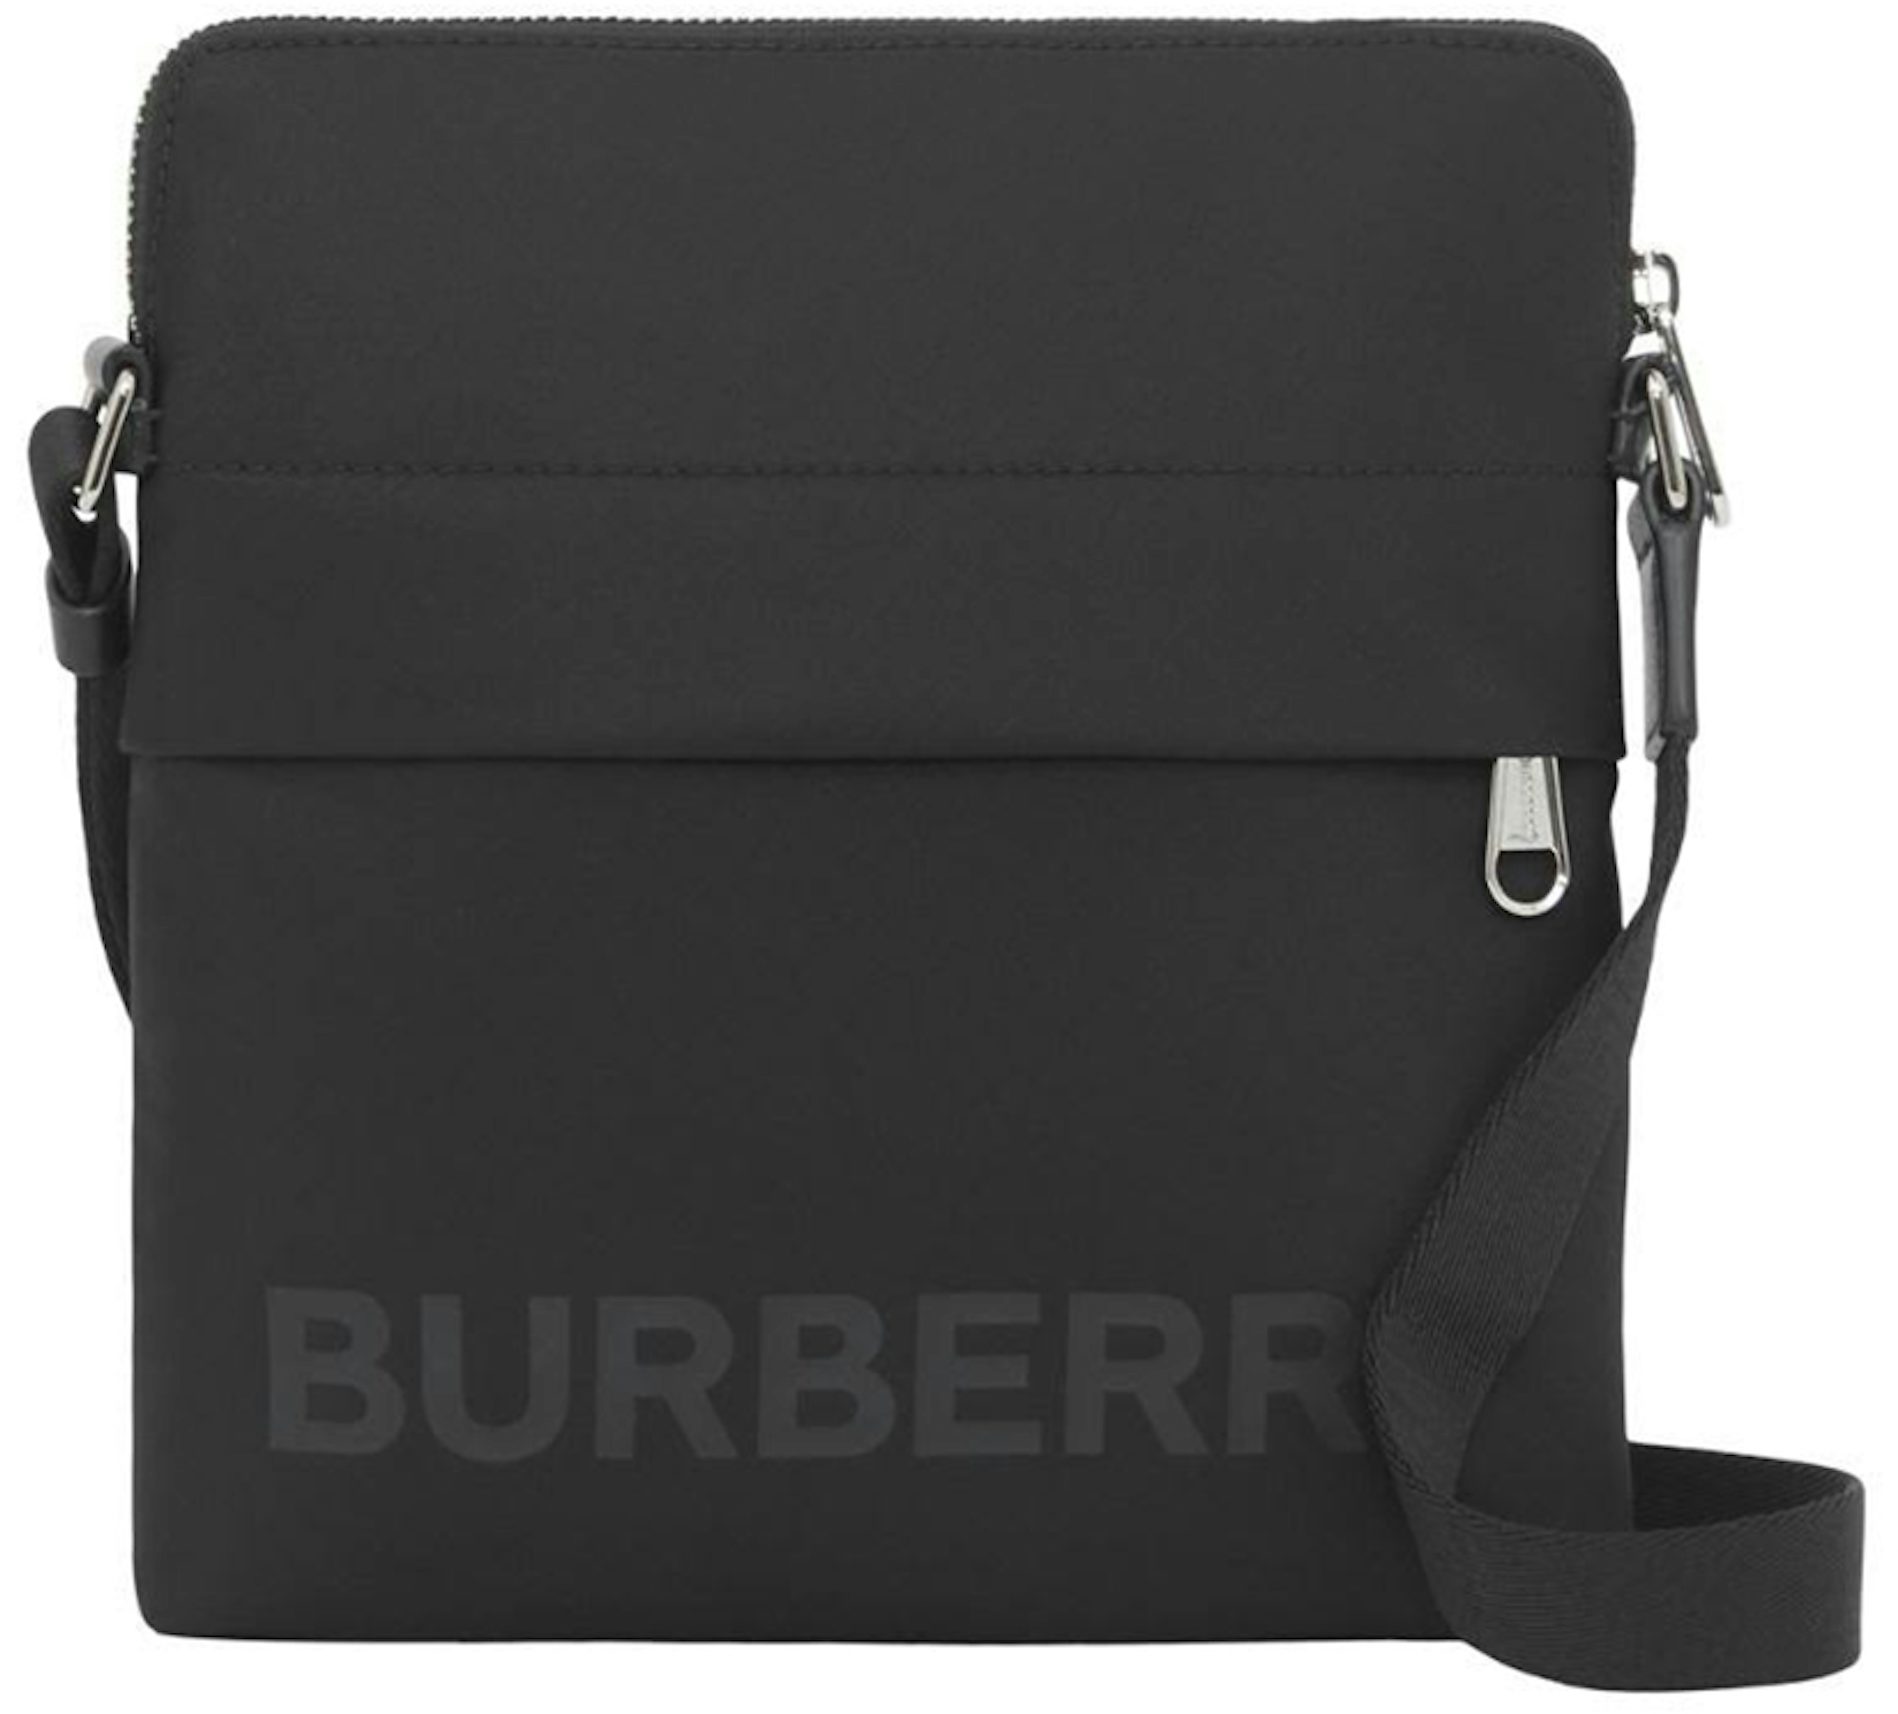 burberry bag black